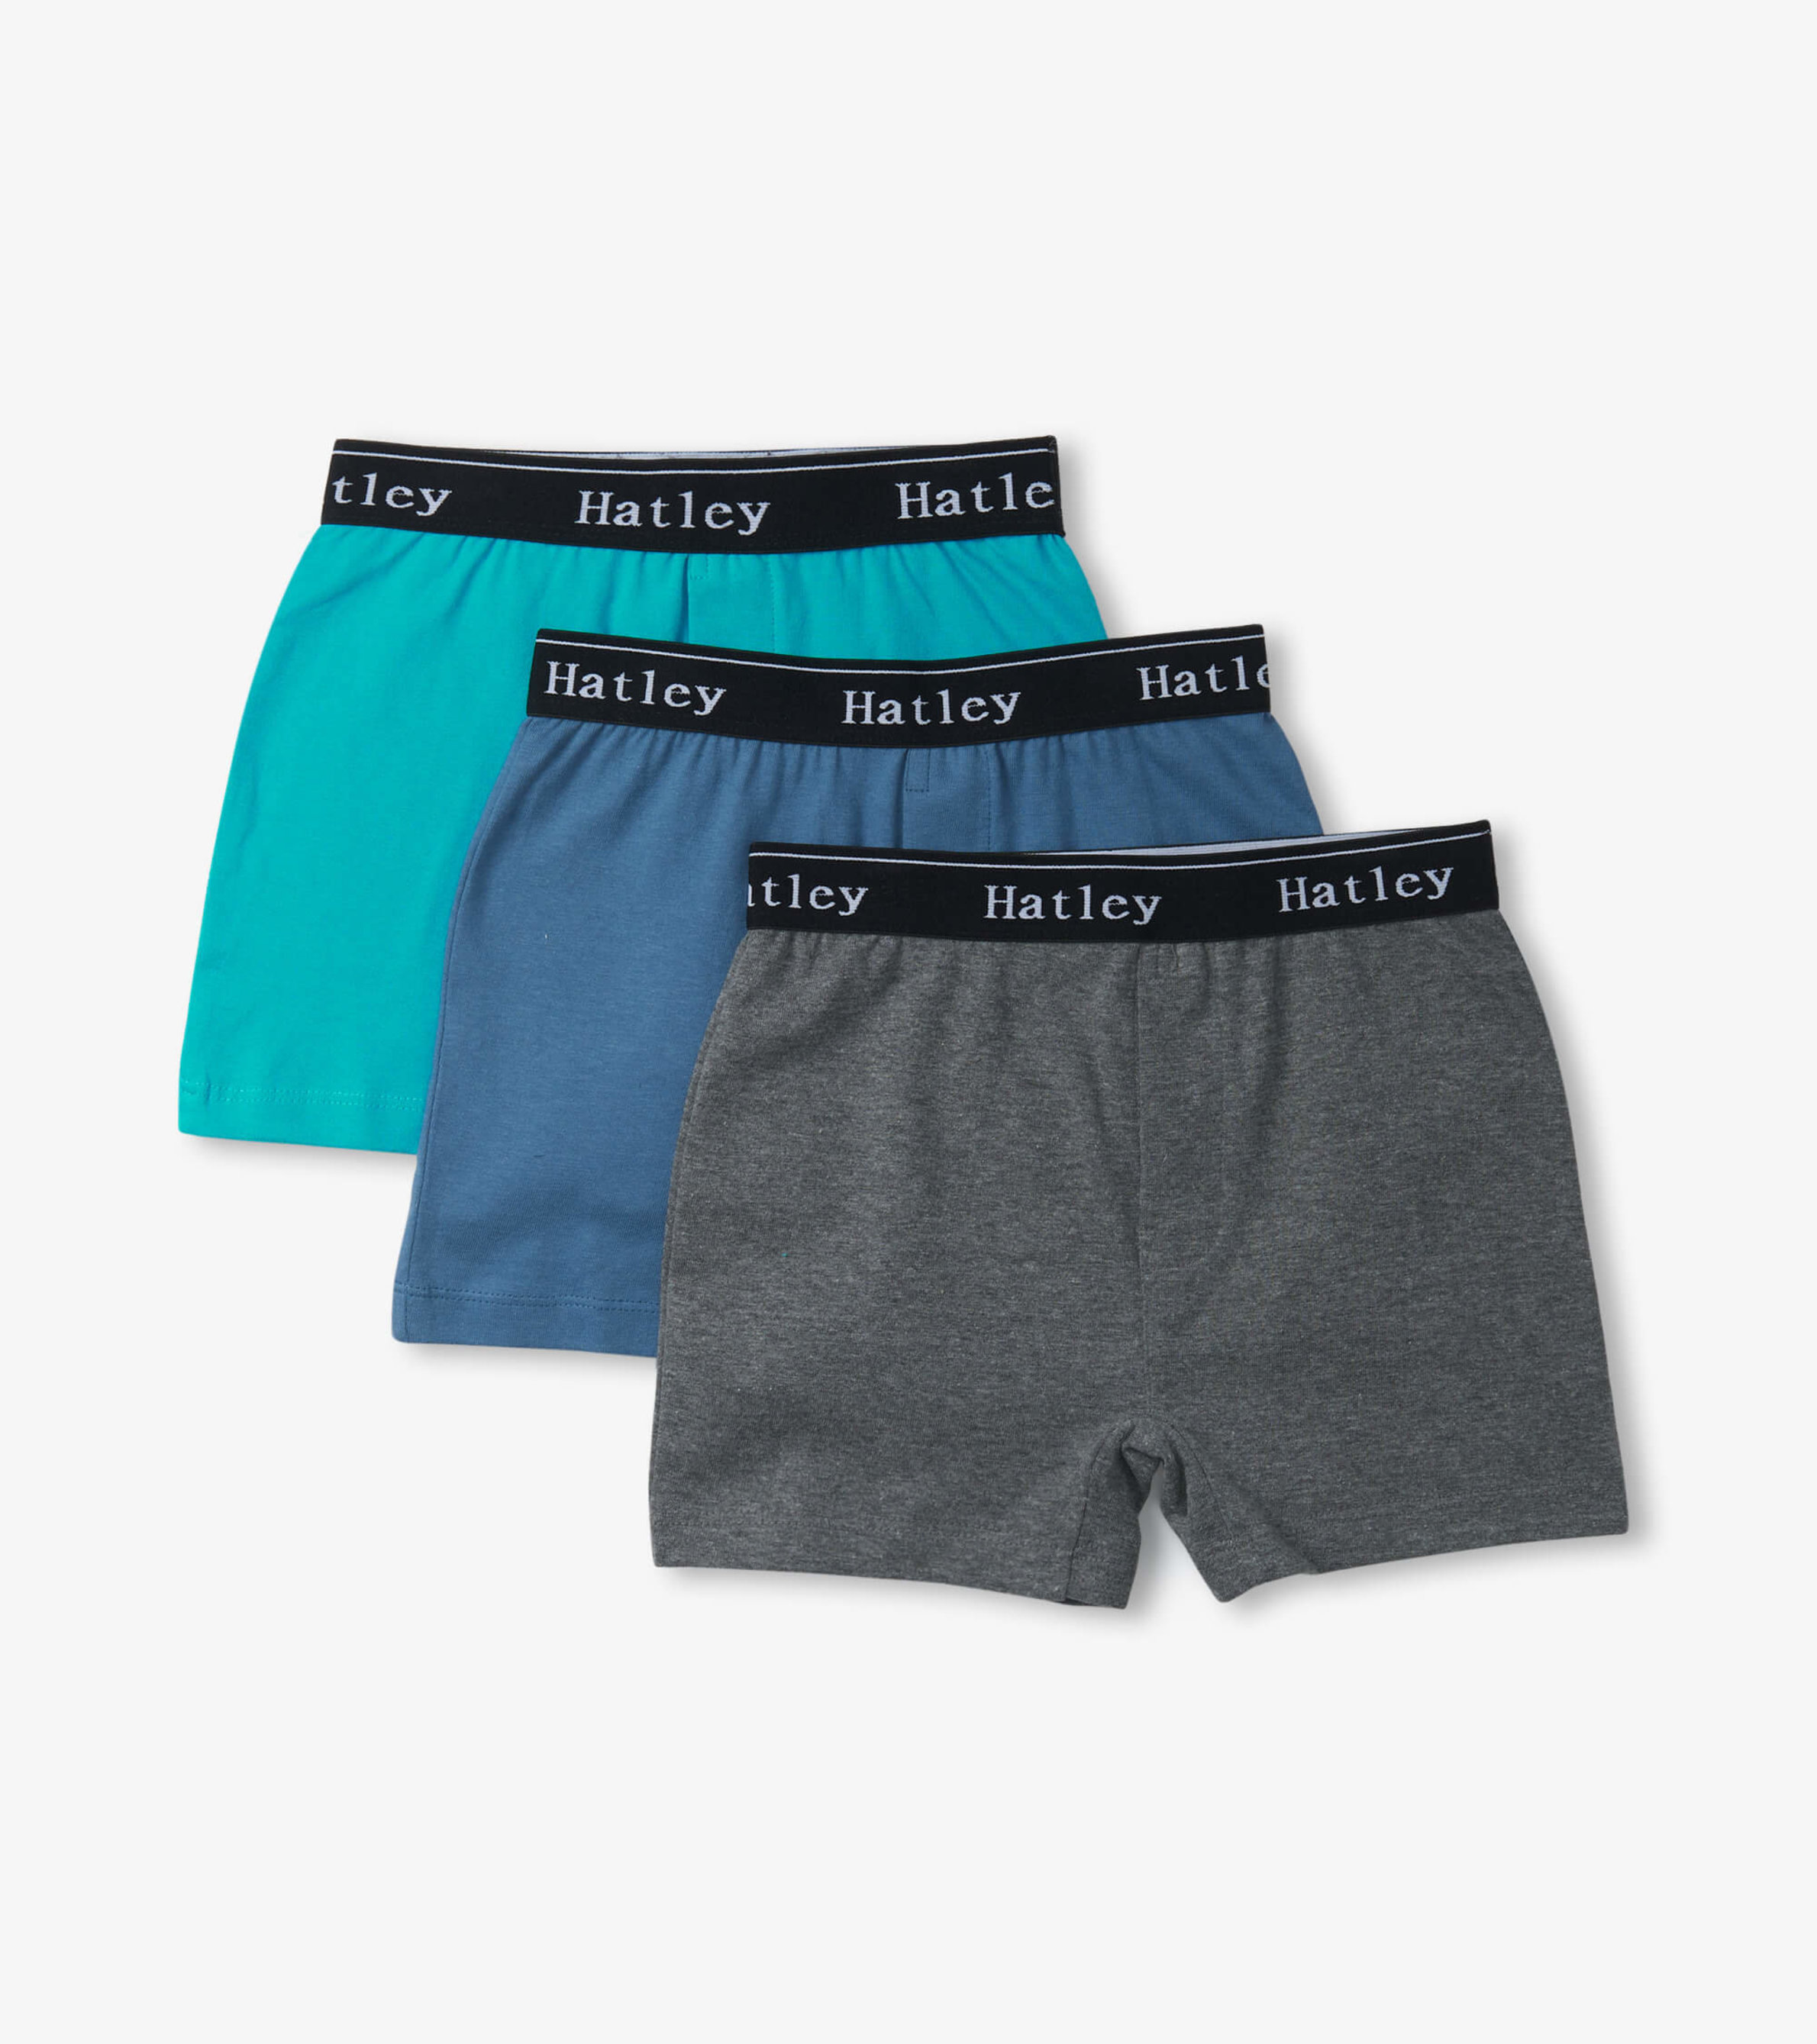 Nice Golf Balls Men's Boxer Briefs Underwear by Hatley 